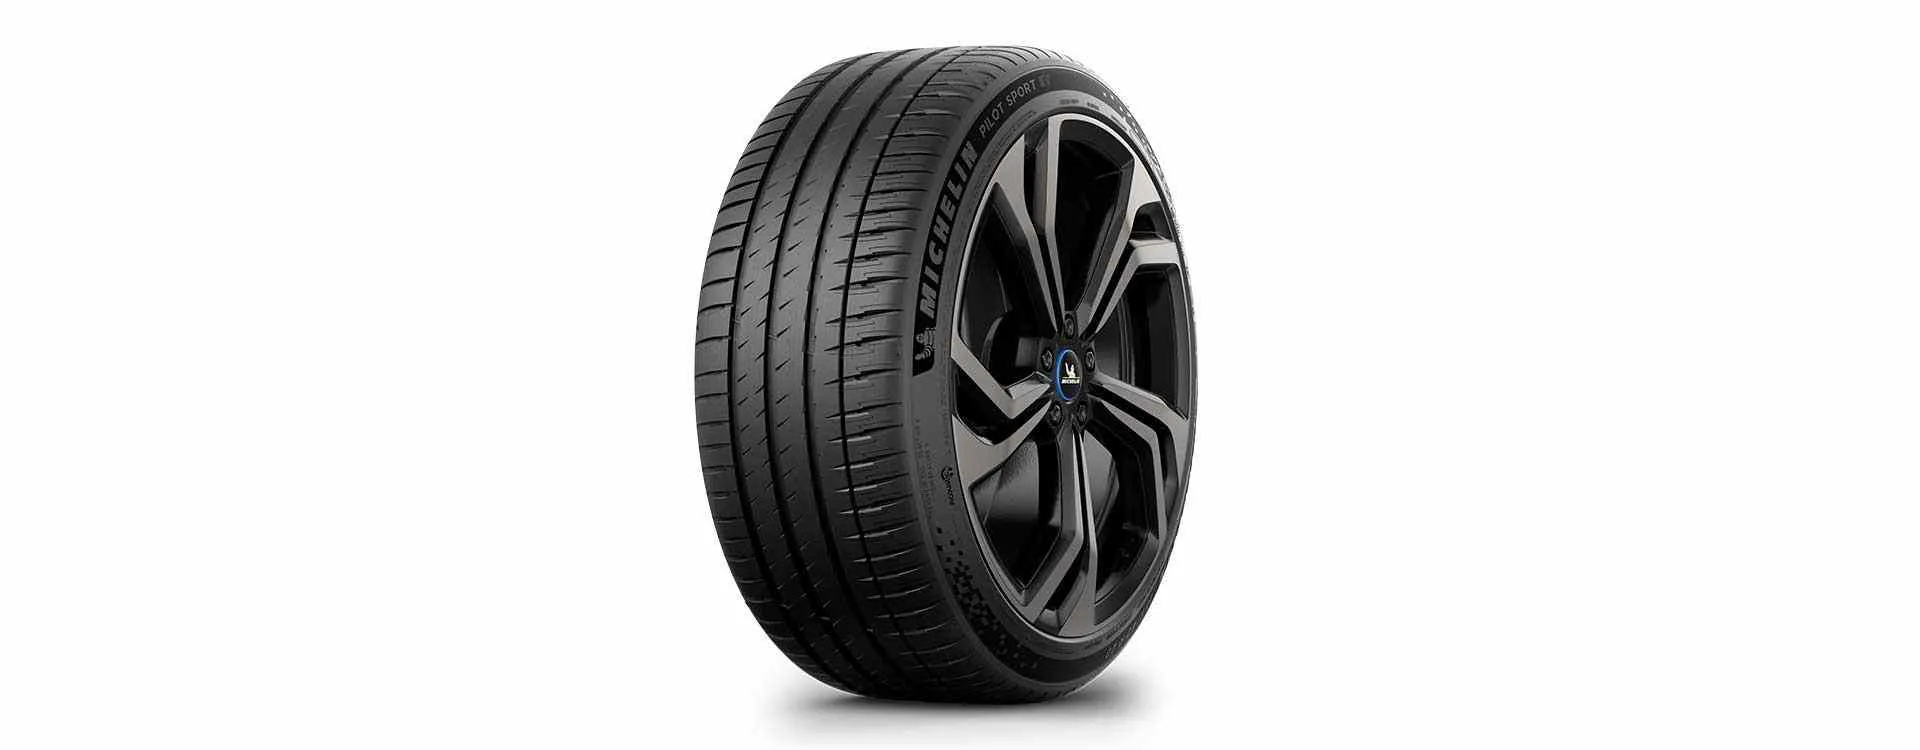 Nuovi pneumatici Michelin Pilot Sport EV